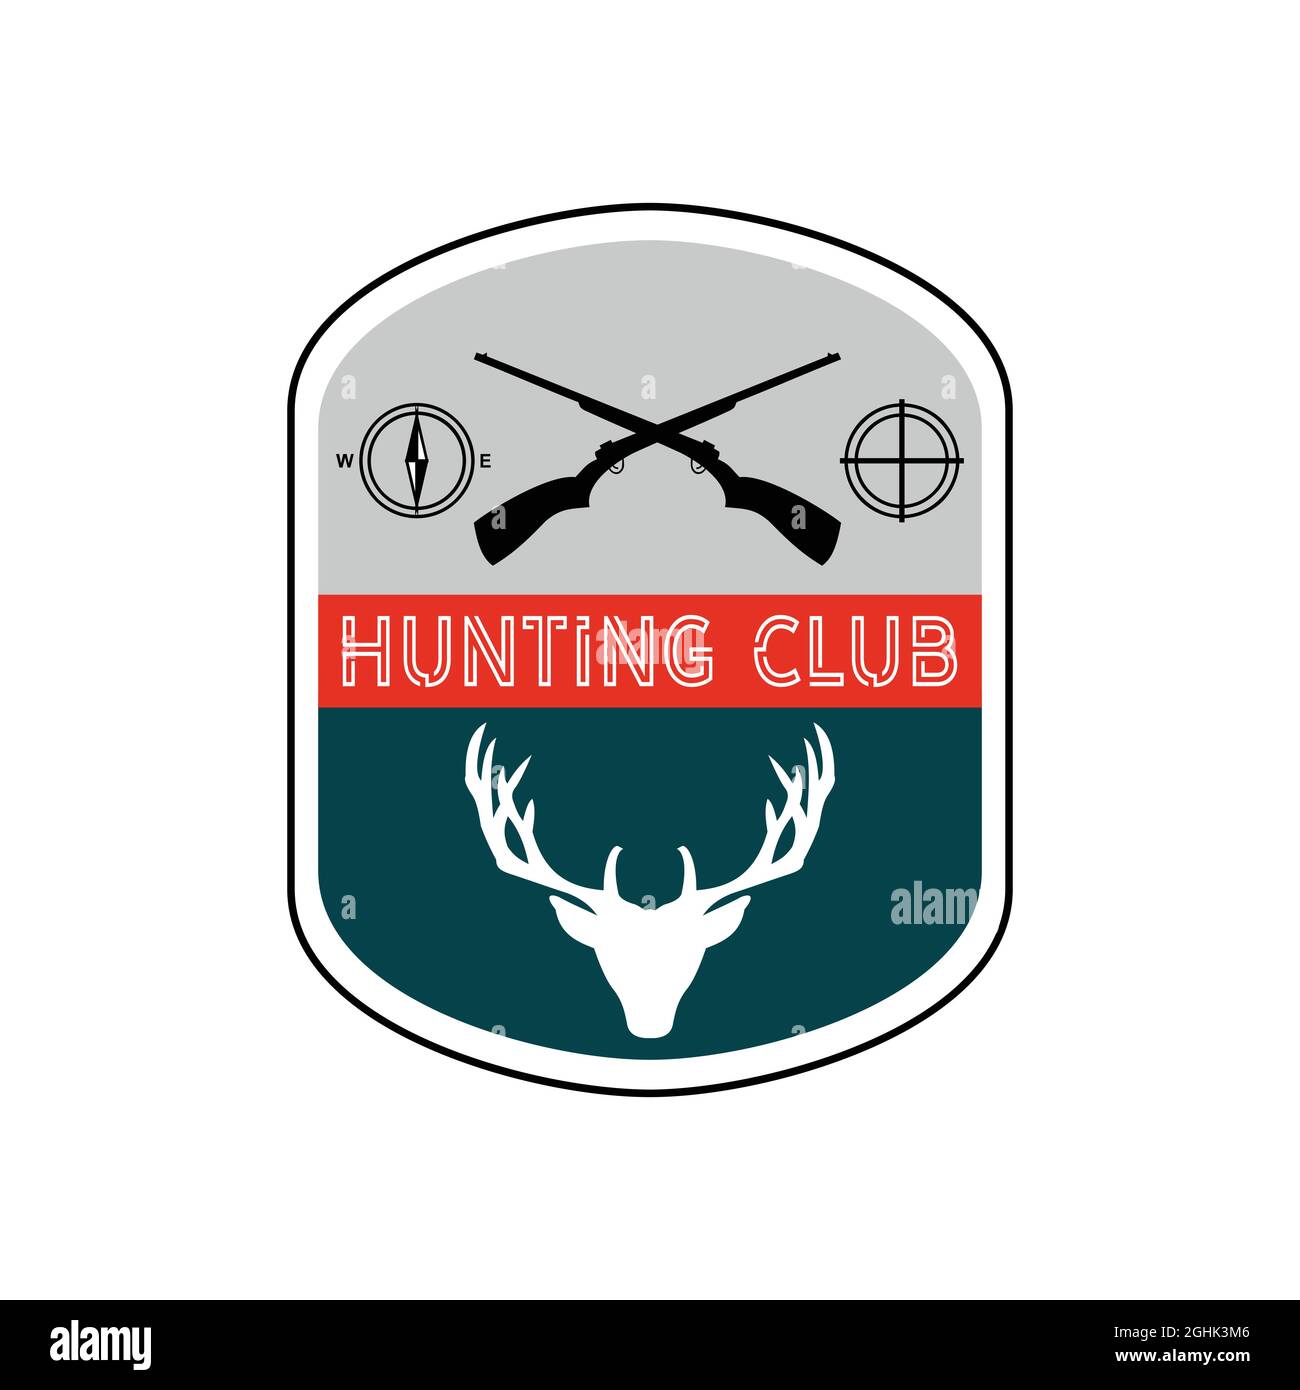 logo de la saison de chasse qui peut être personnalisé avec le nom du club selon vos besoins Illustration de Vecteur